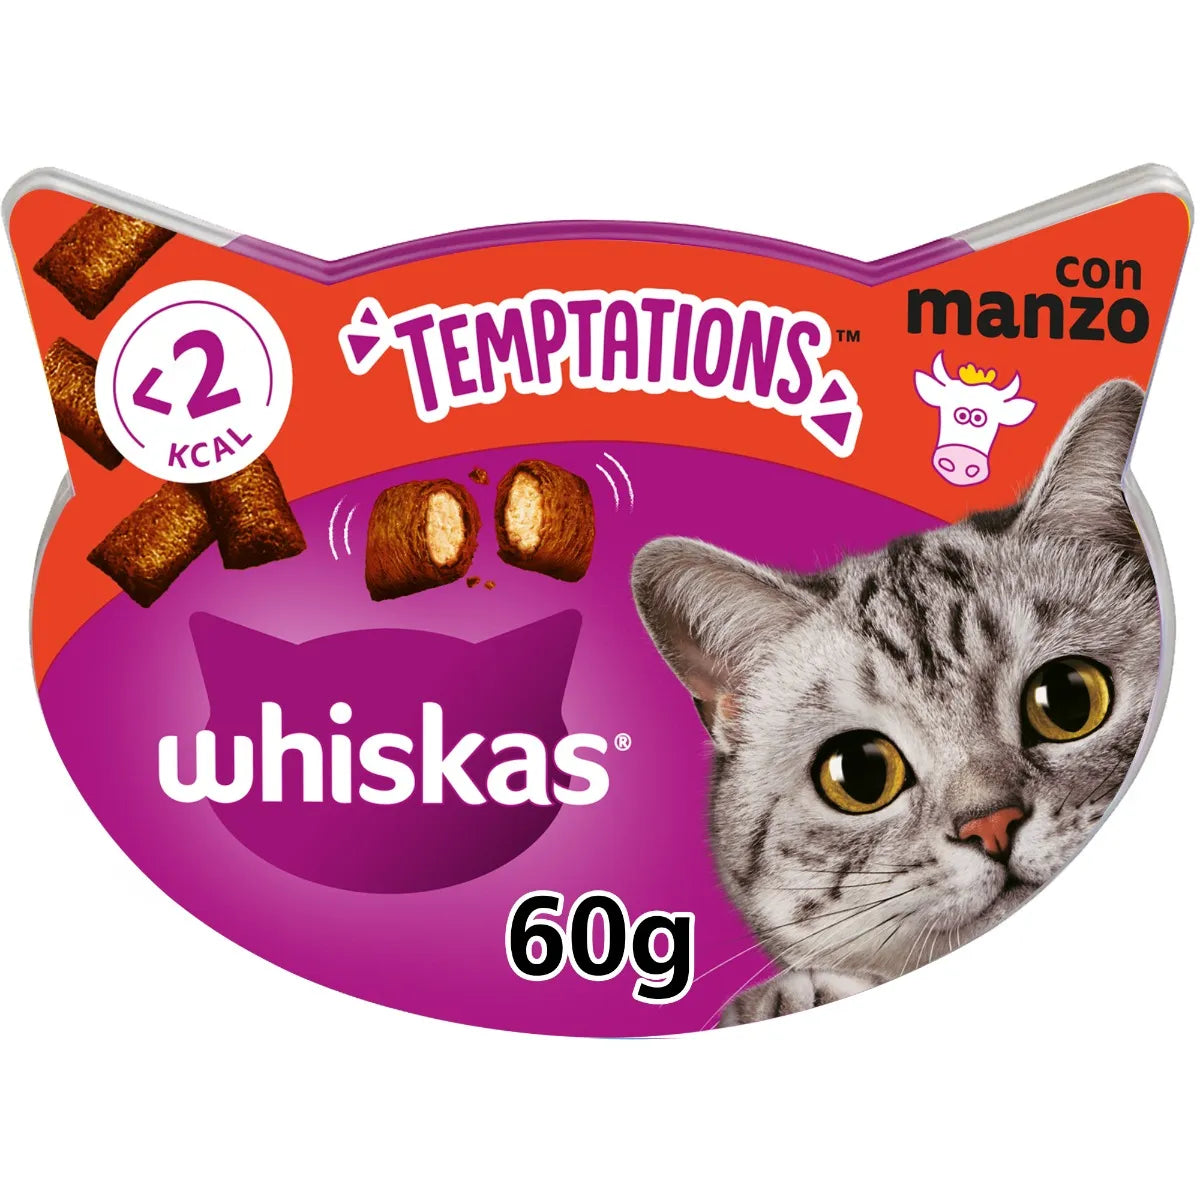 Whiskas Temptations con Manzo 60g Snack per Gatto